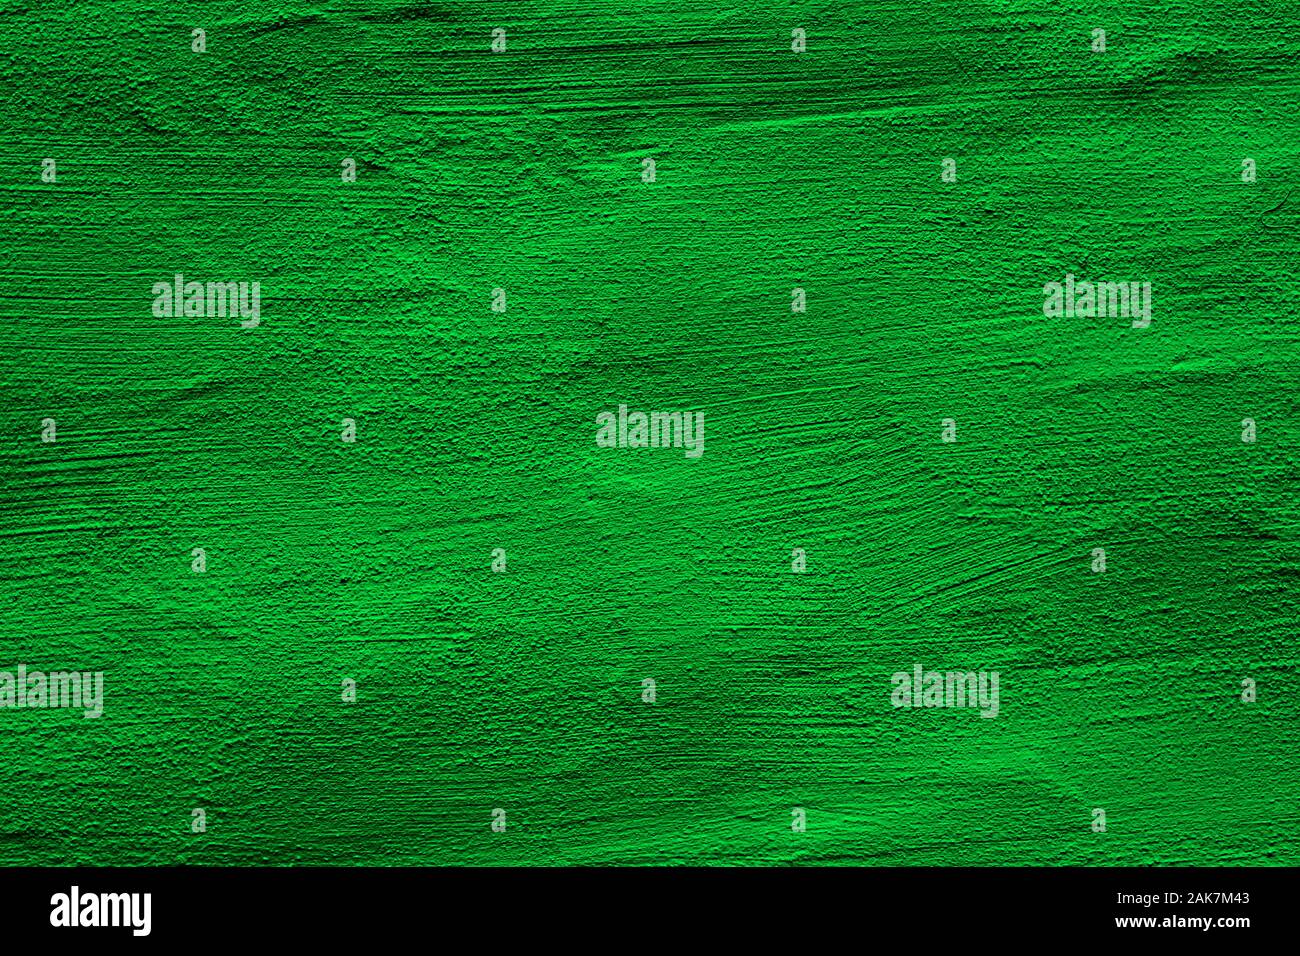 Arrière-plan de couleur verte avec des textures de différentes nuances de vert Banque D'Images